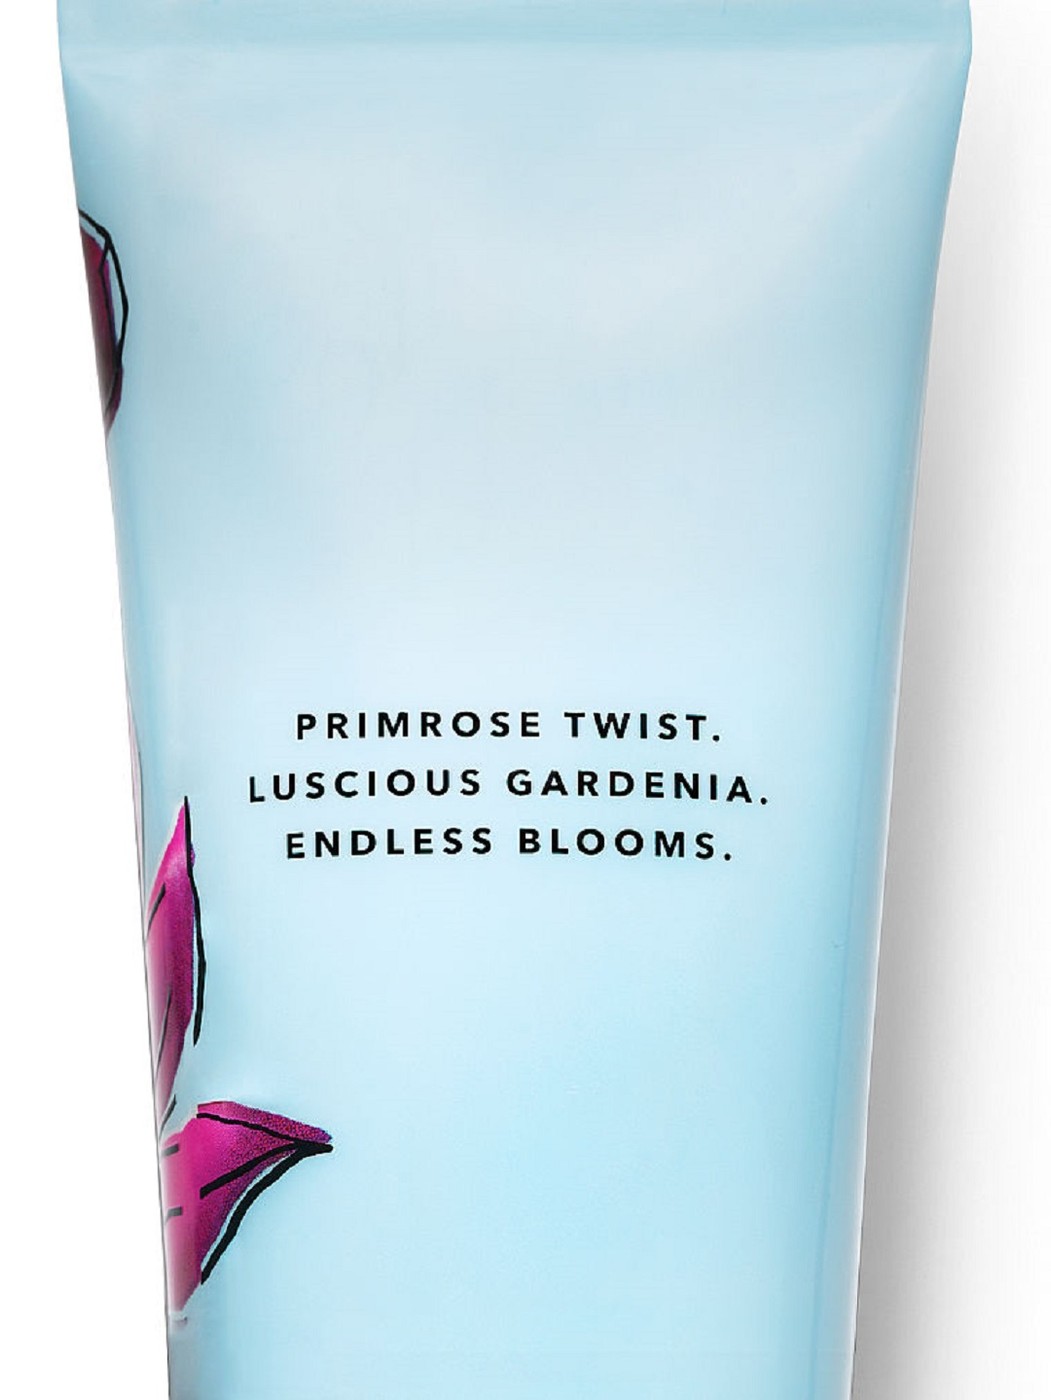 Подарочный набор Victoria's Secret Wild Primrose (Fragrance Mists/Fragrance Lotion)